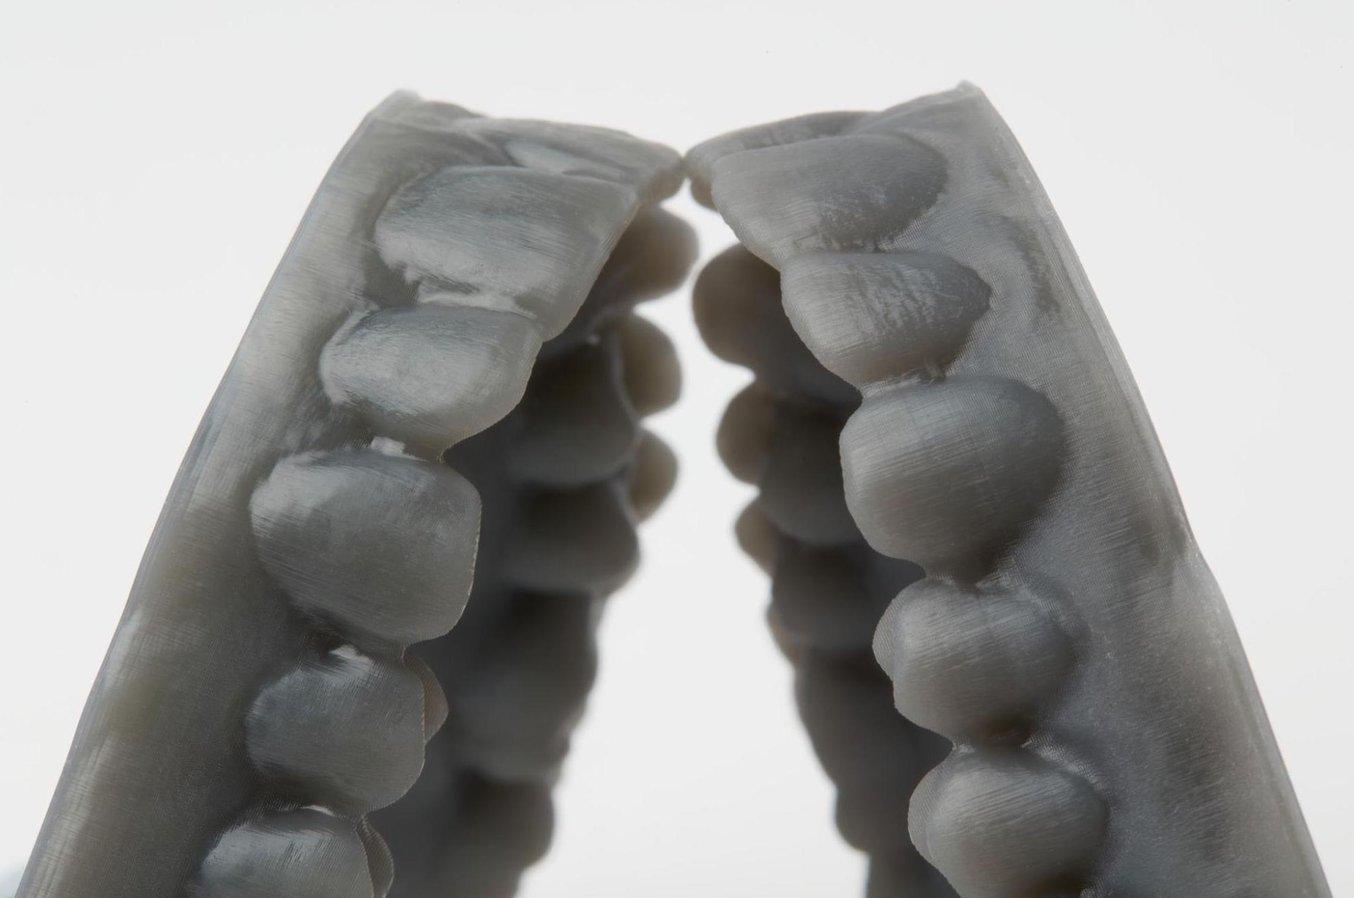 3D printed dental aligner models